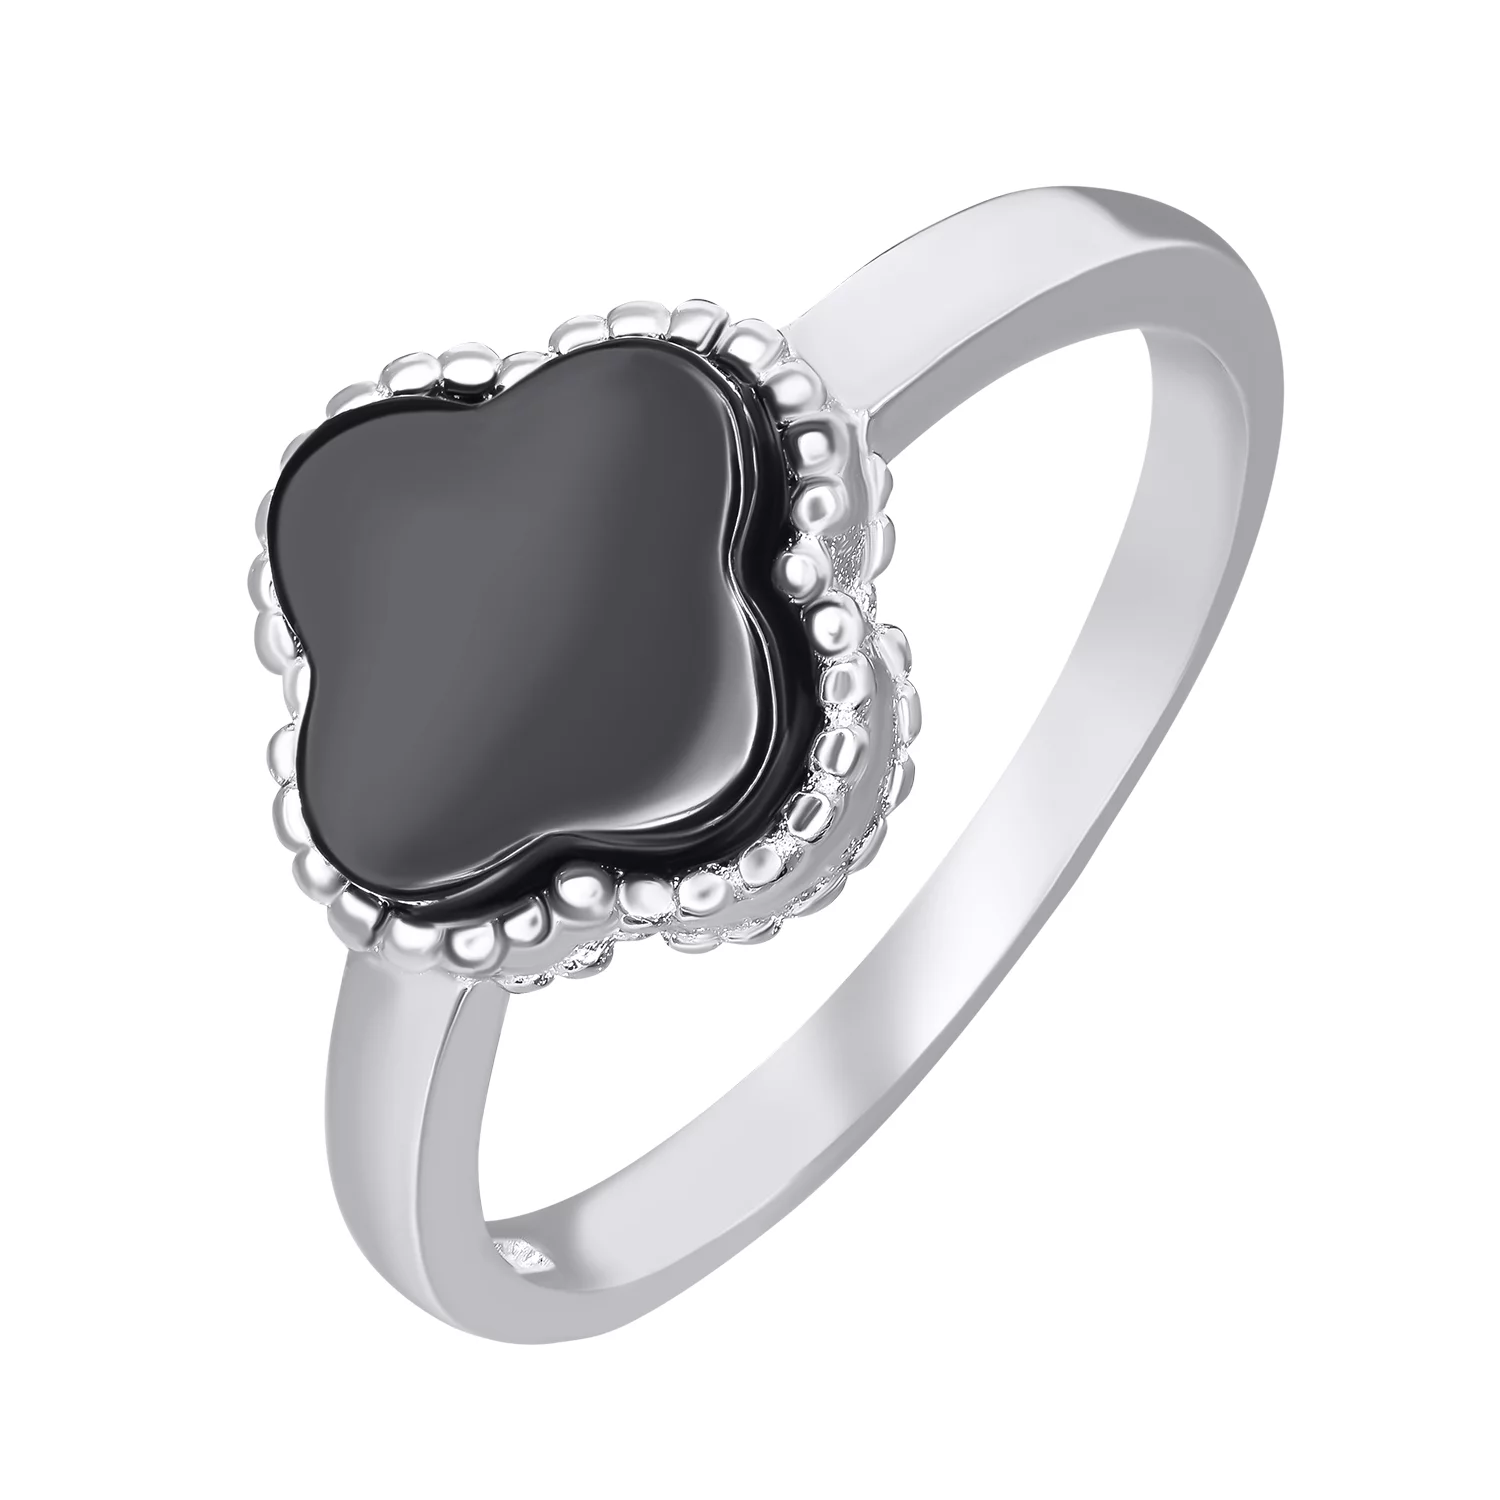 Кольцо серебряное с ониксом Клевер. Артикул 7501/2000358/170: цена, отзывы, фото – купить в интернет-магазине AURUM